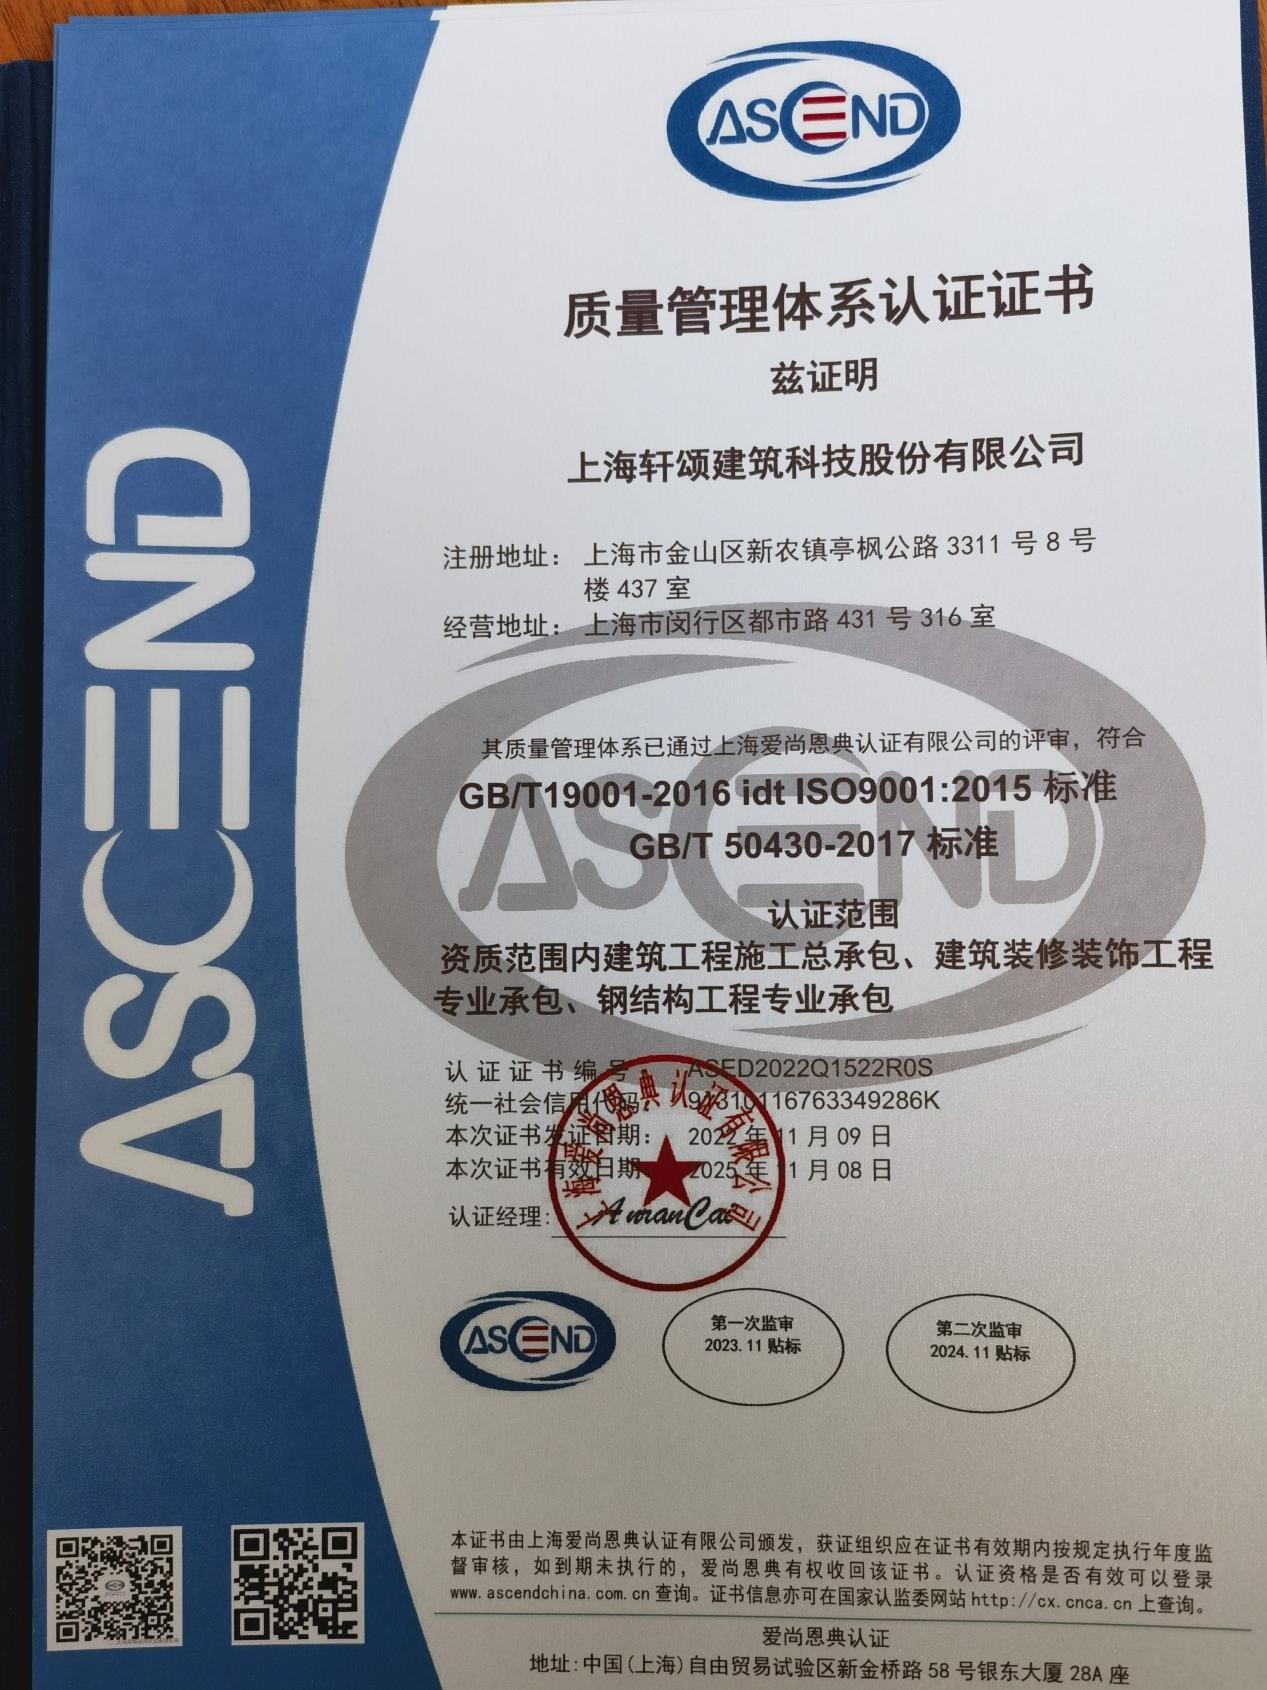 上海轩颂建筑荣获国标ISO质量体系认证，领跑行业质量体系标准